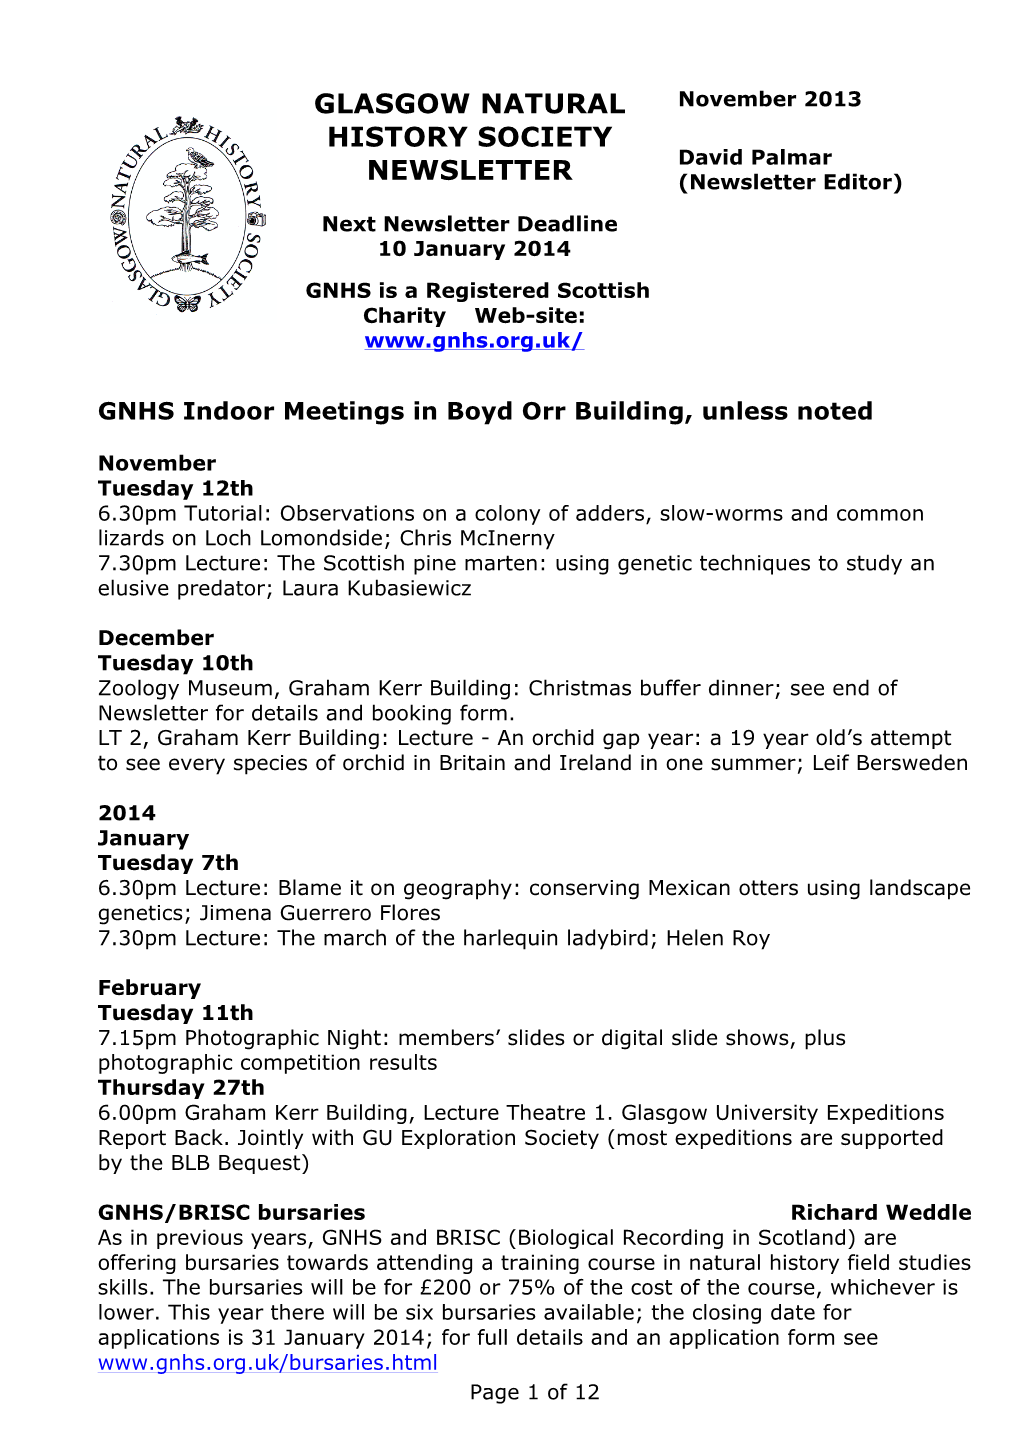 GNHS Newsletter Nov 2013